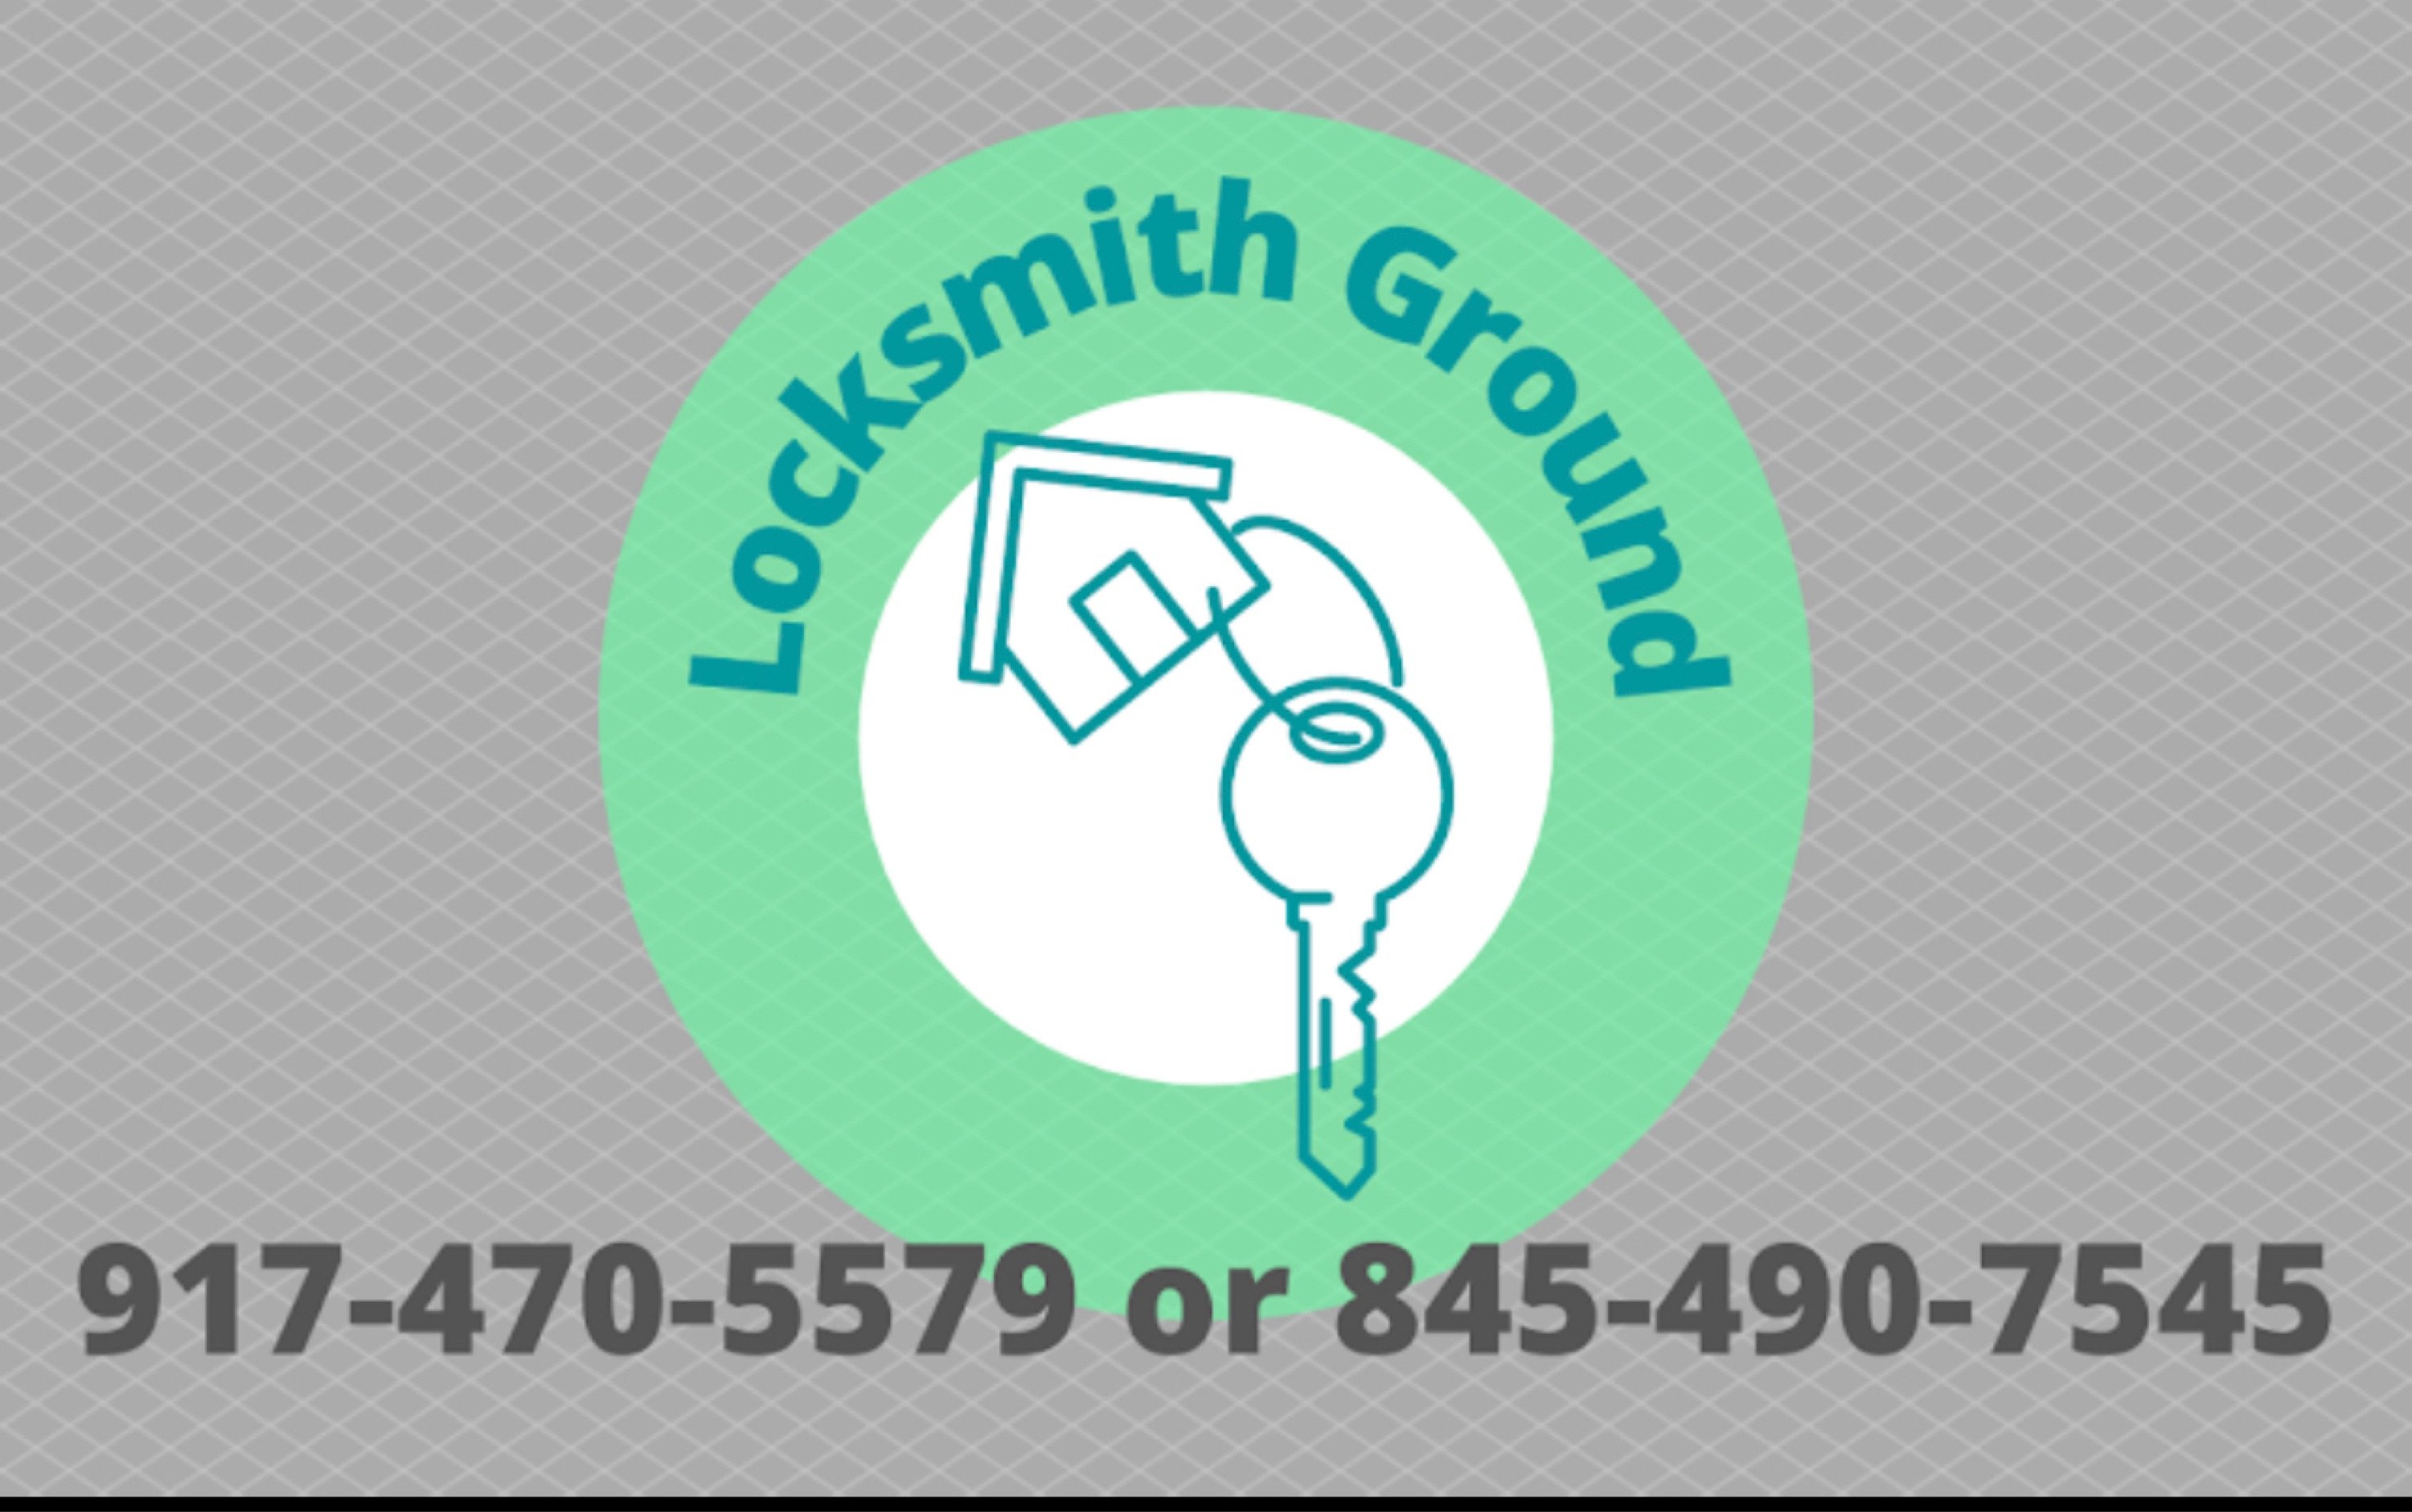 Locksmith Ground Logo